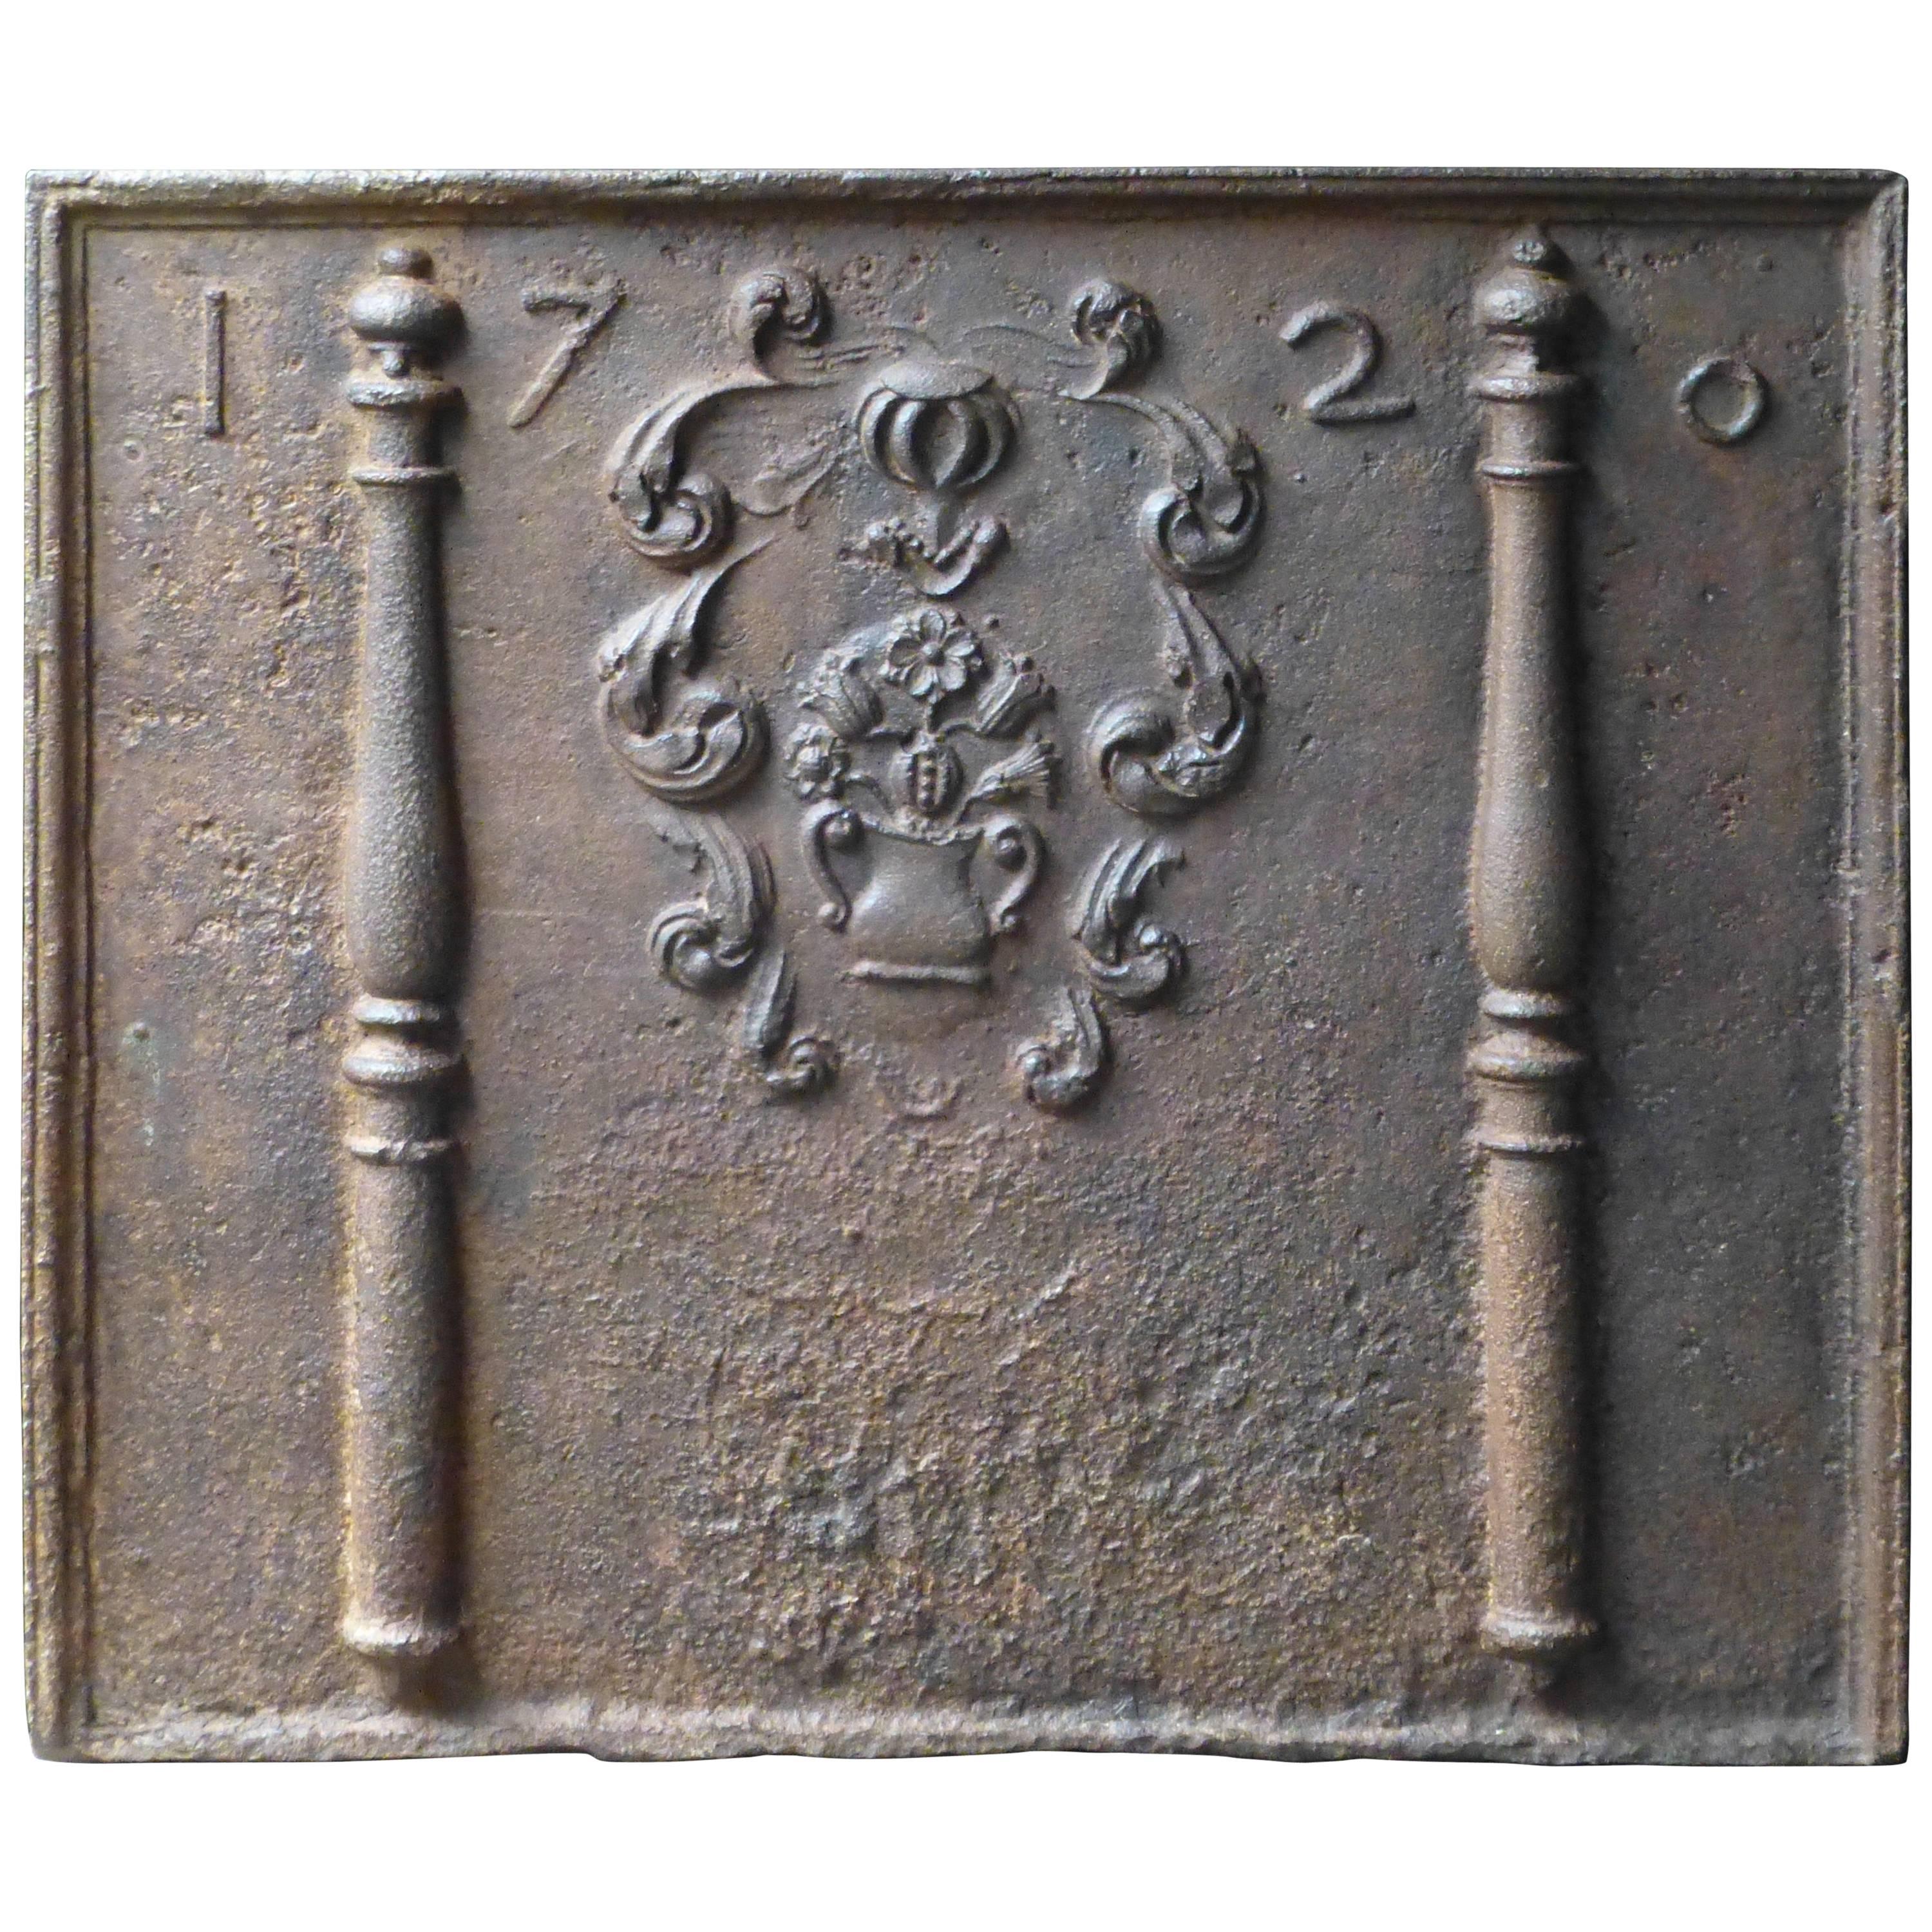 Magnifique plaque de cheminée / crédence française « Armoiries », datée de 1720